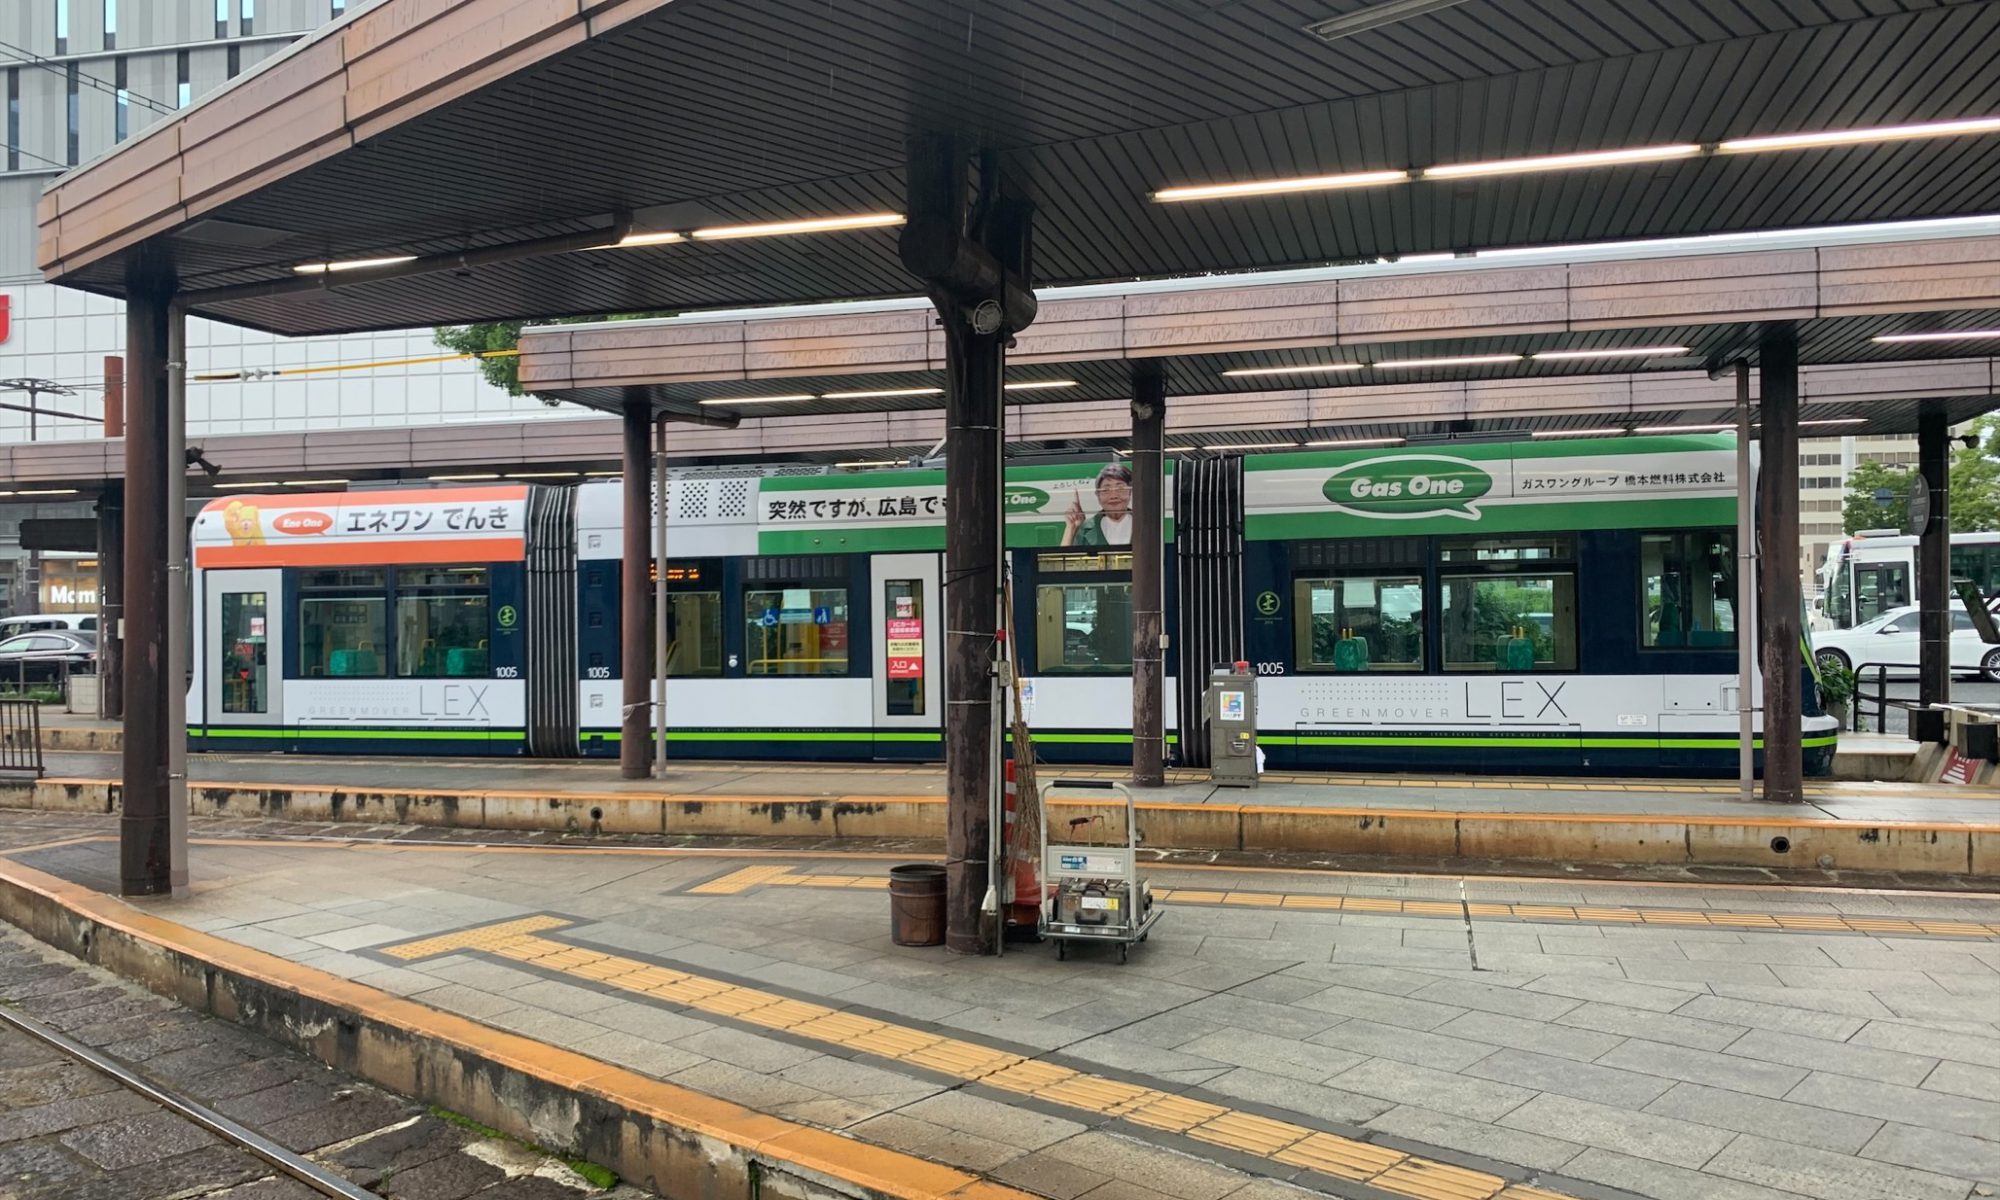 広島駅の路線バス画像です。